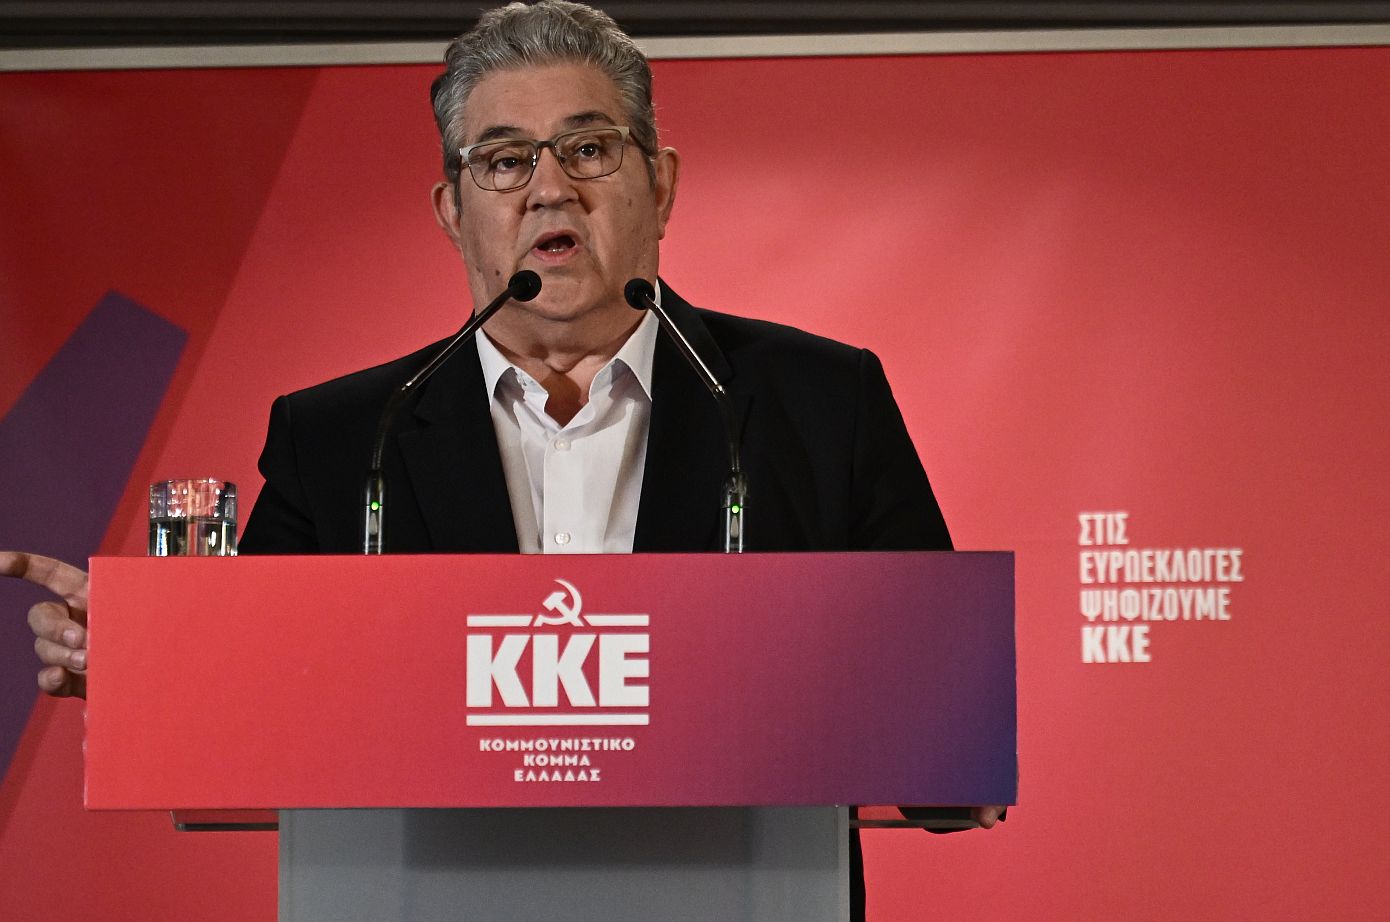 Κουτσούμπας: Το ευρωψηφοδέλτιο του ΚΚΕ εκφράζει τη γνήσια εργατική-λαϊκή αντιπολίτευση